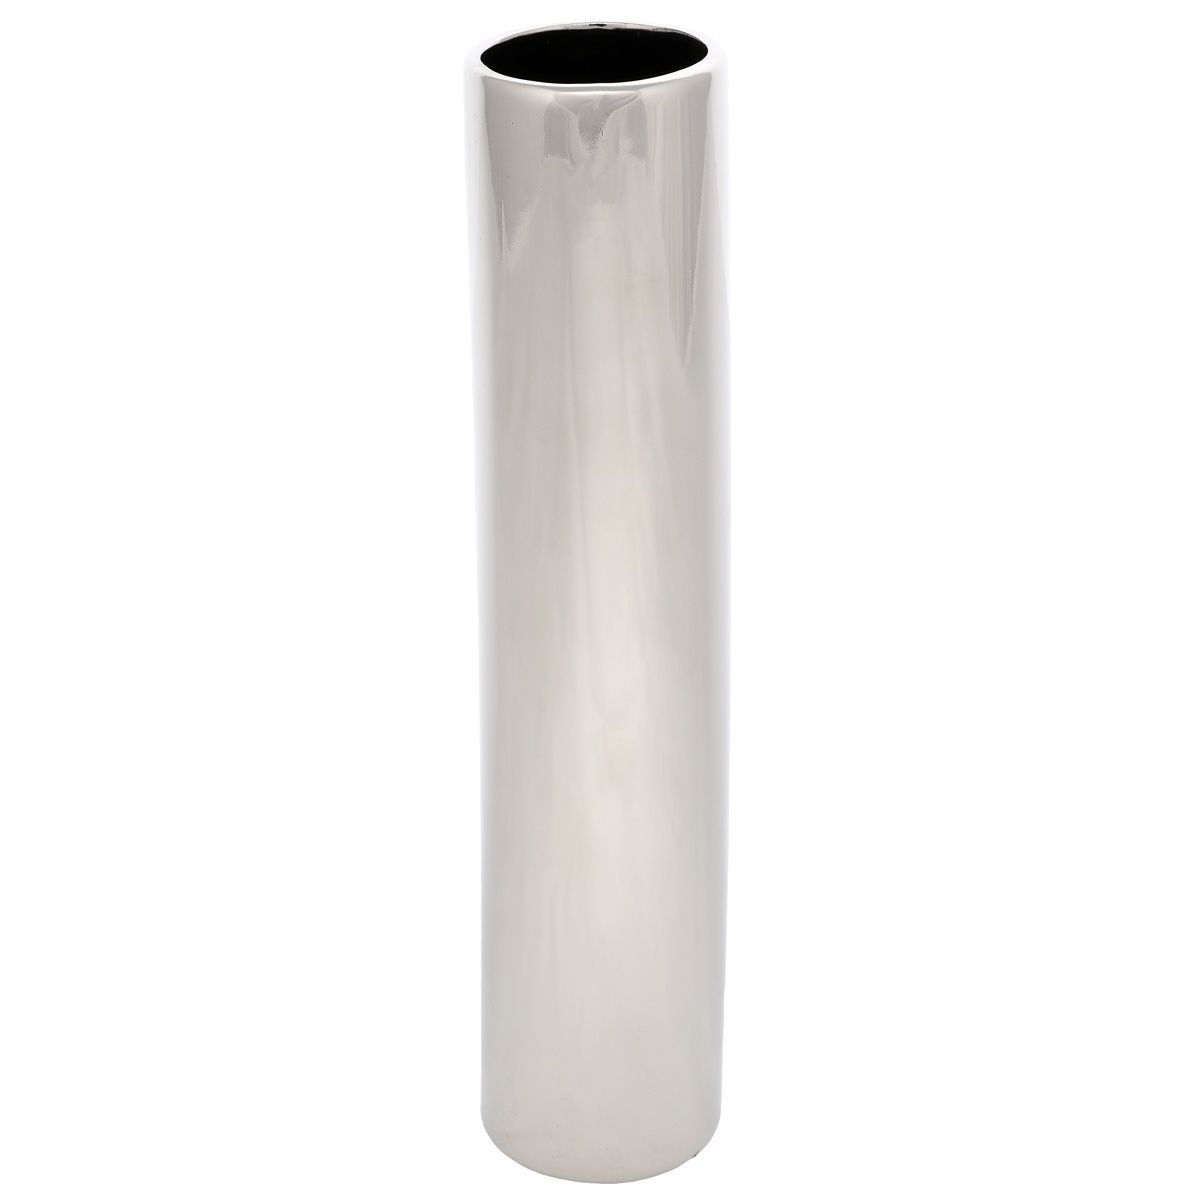 Keramická váza Tube, 5 x 24 x 5 cm, stříbrná - 4home.cz